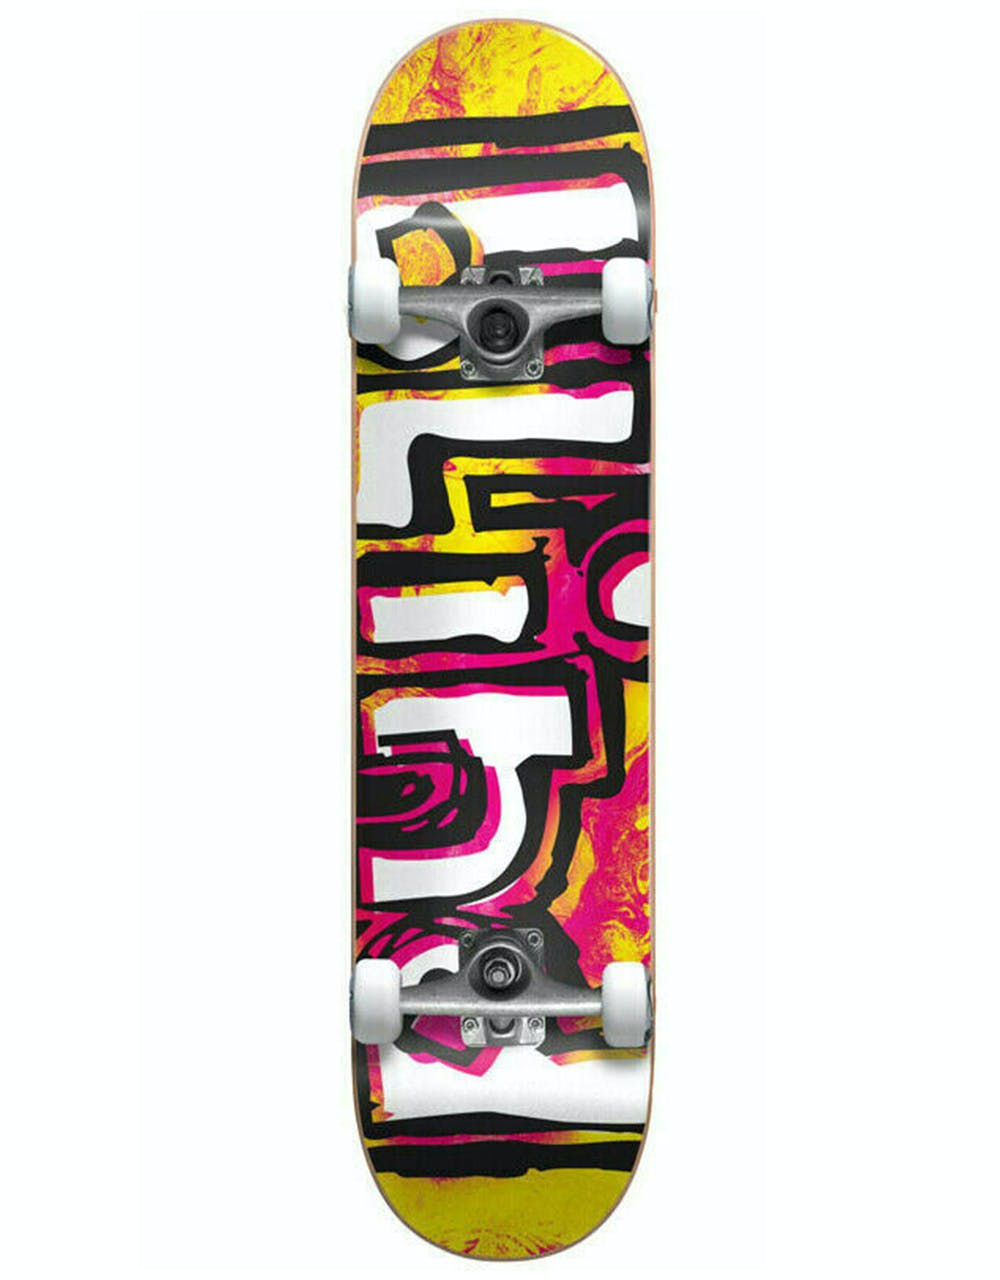 Blind OG Water Color 'Soft Top' Micro Complete Skateboard - 6.75"